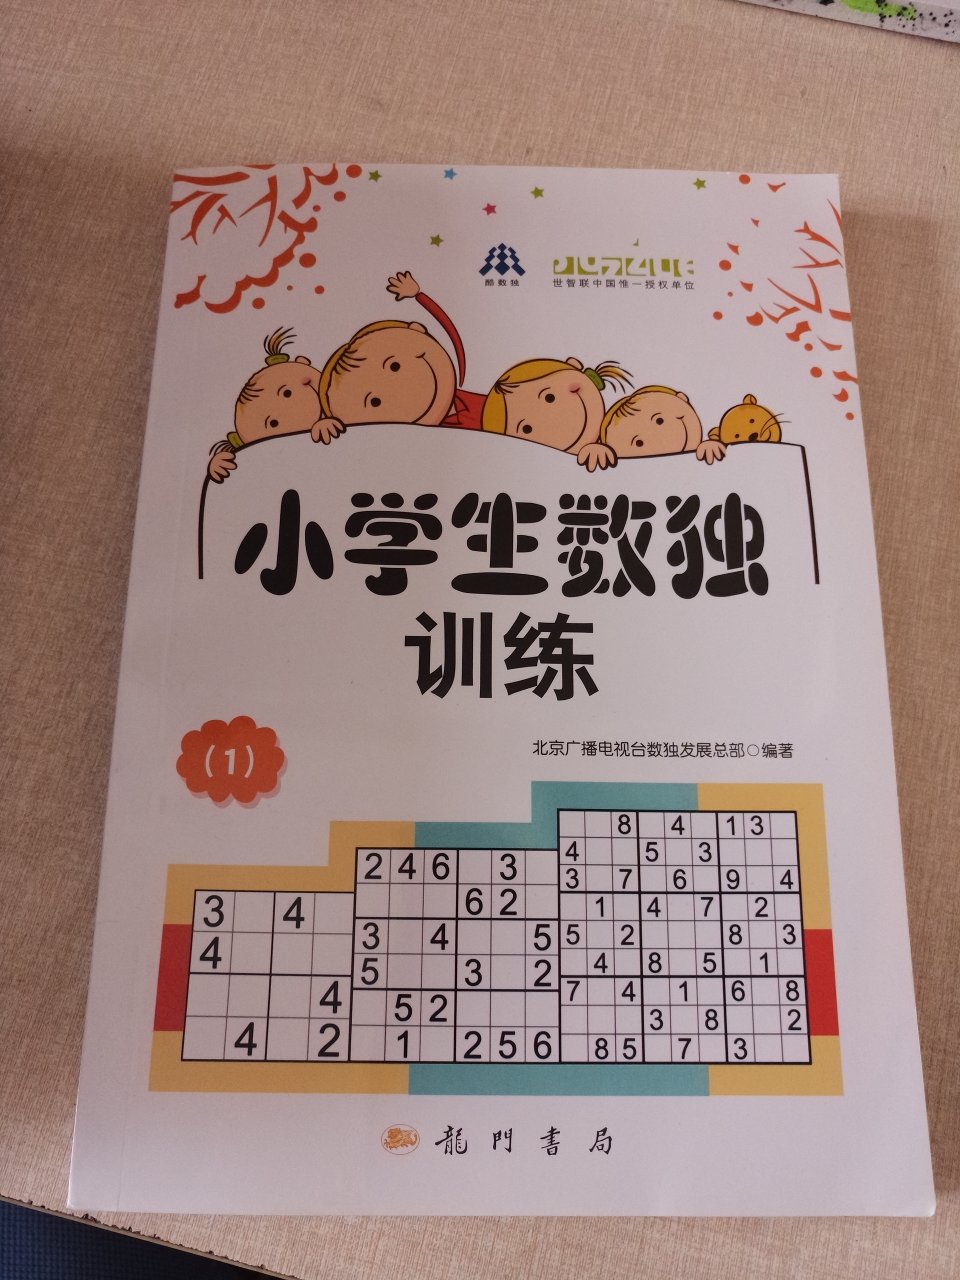 北京市读数运动协，会中小学读书比赛指定用书，提高思维能力，越玩越聪明。